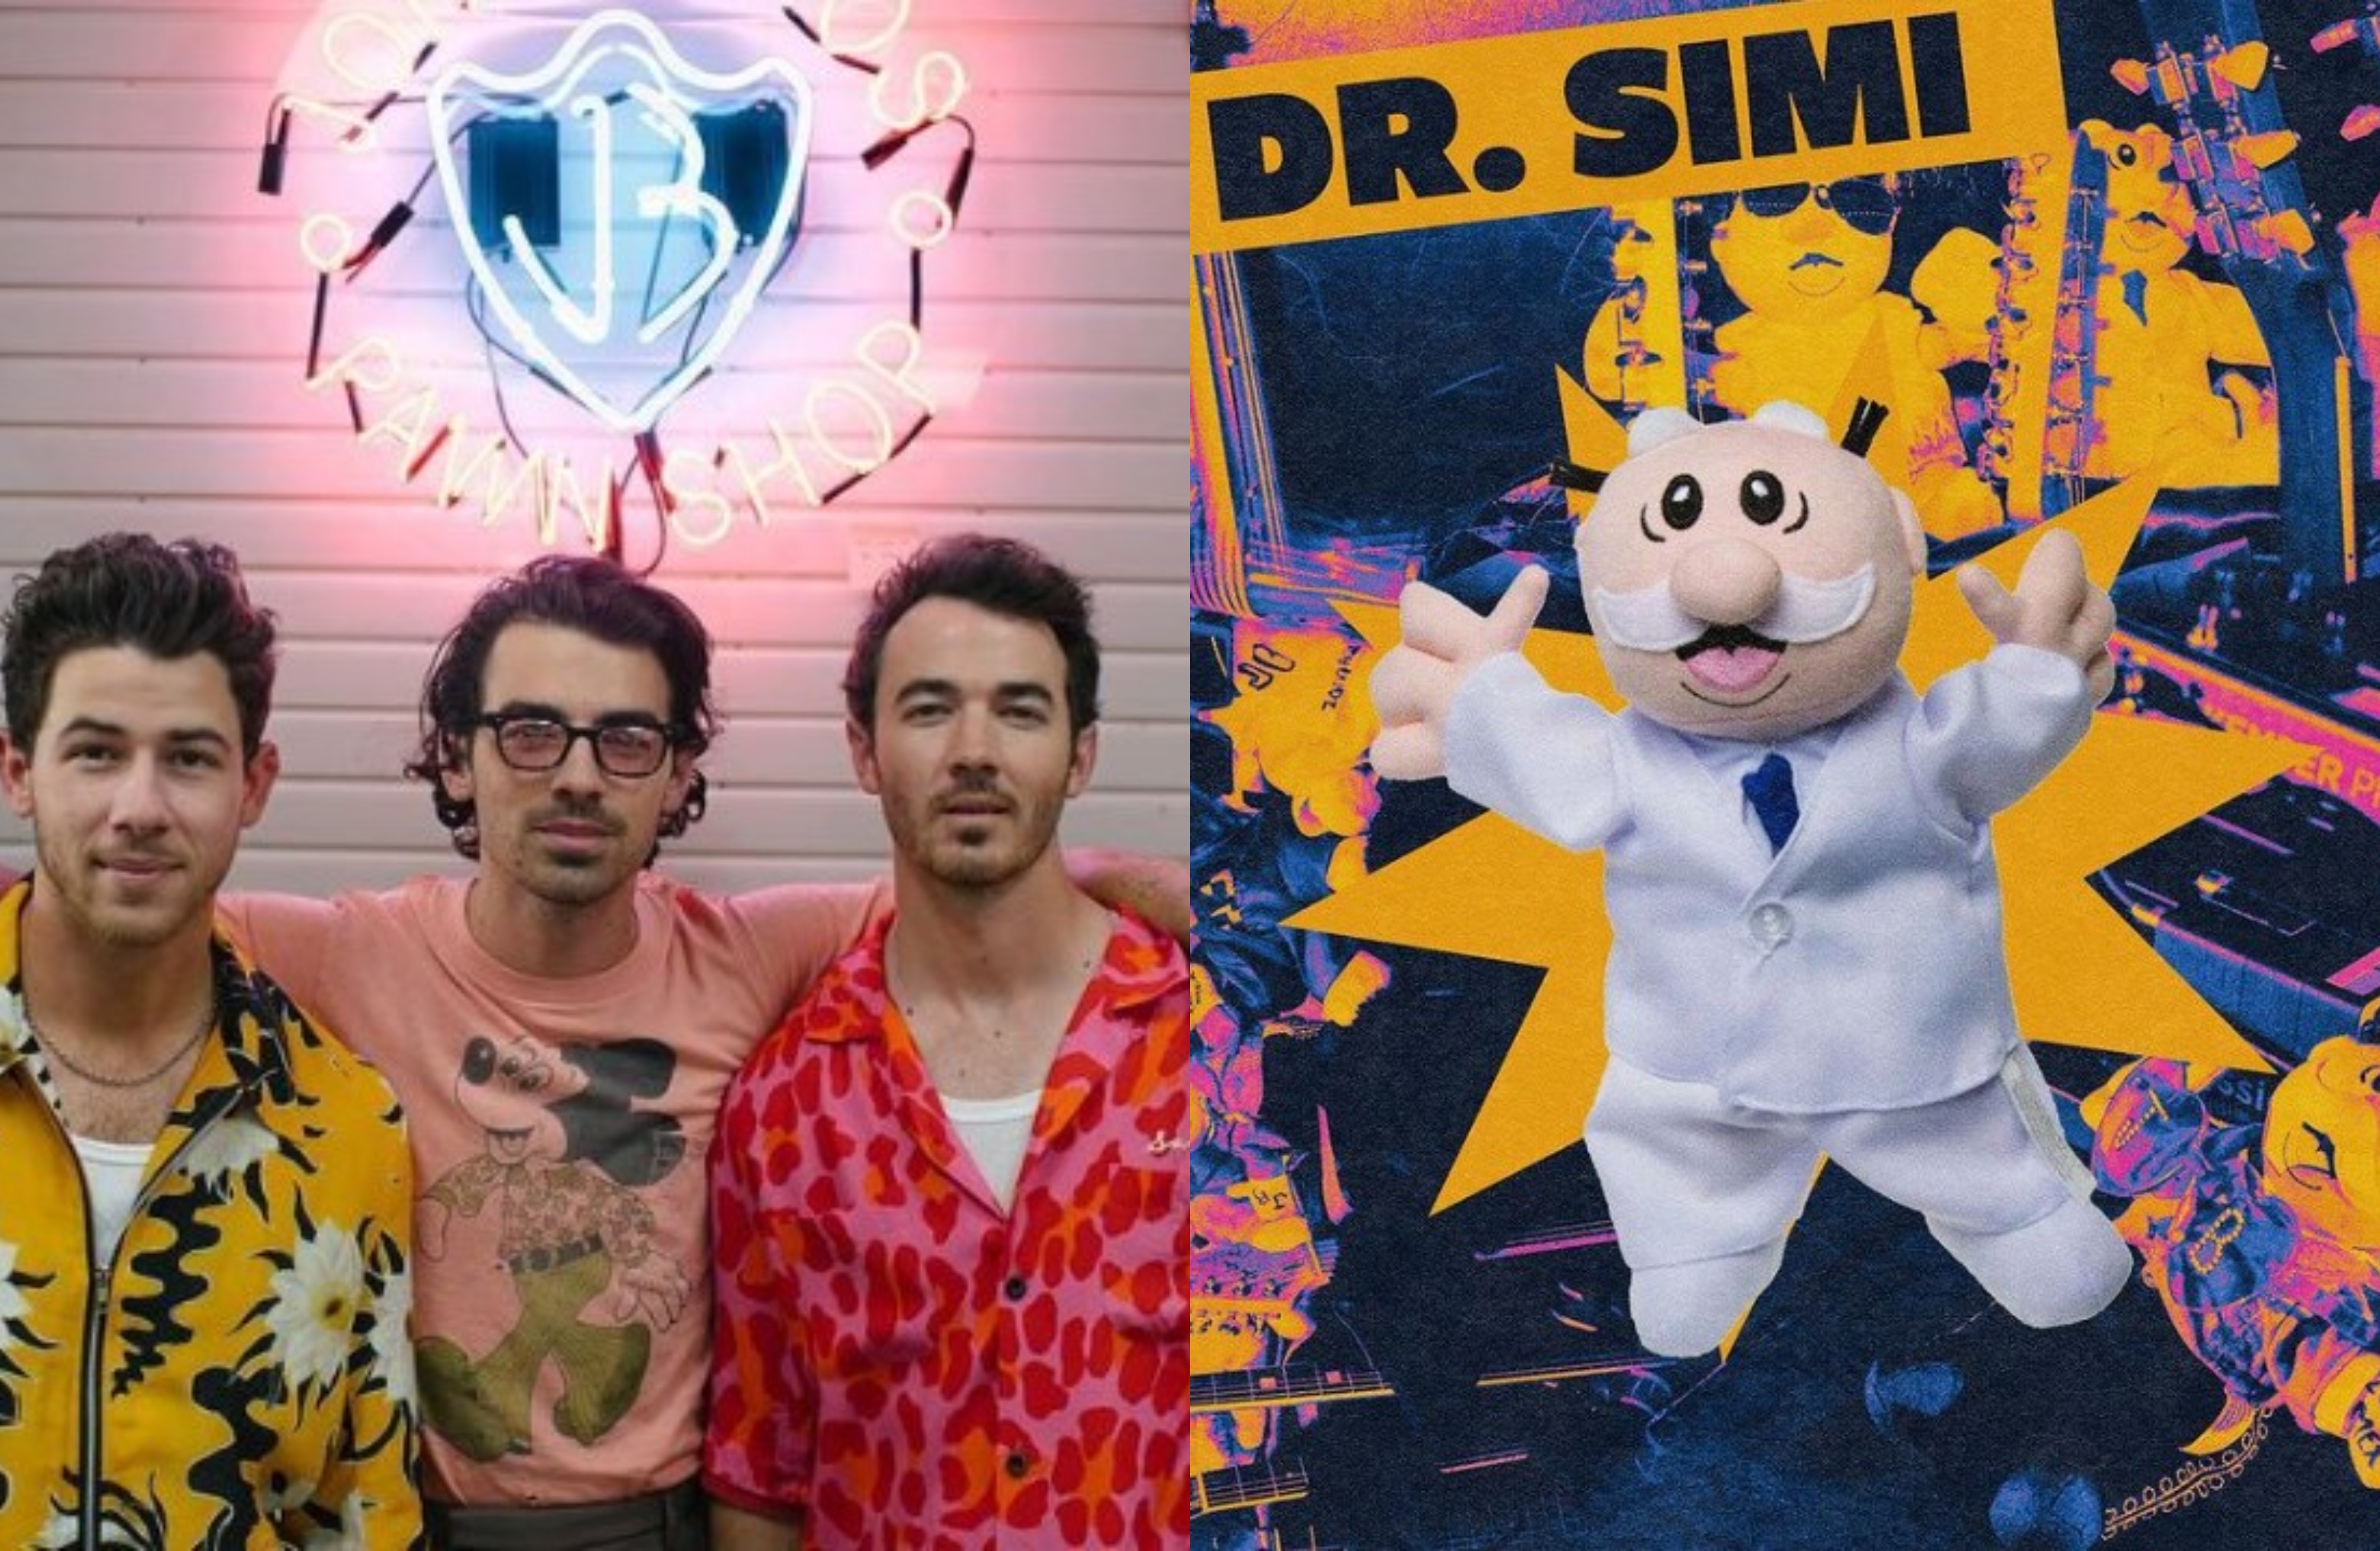 Del odio al amor: los Jonas Brothers se rindieron a la tradición del Dr. Simi después de despreciarlo